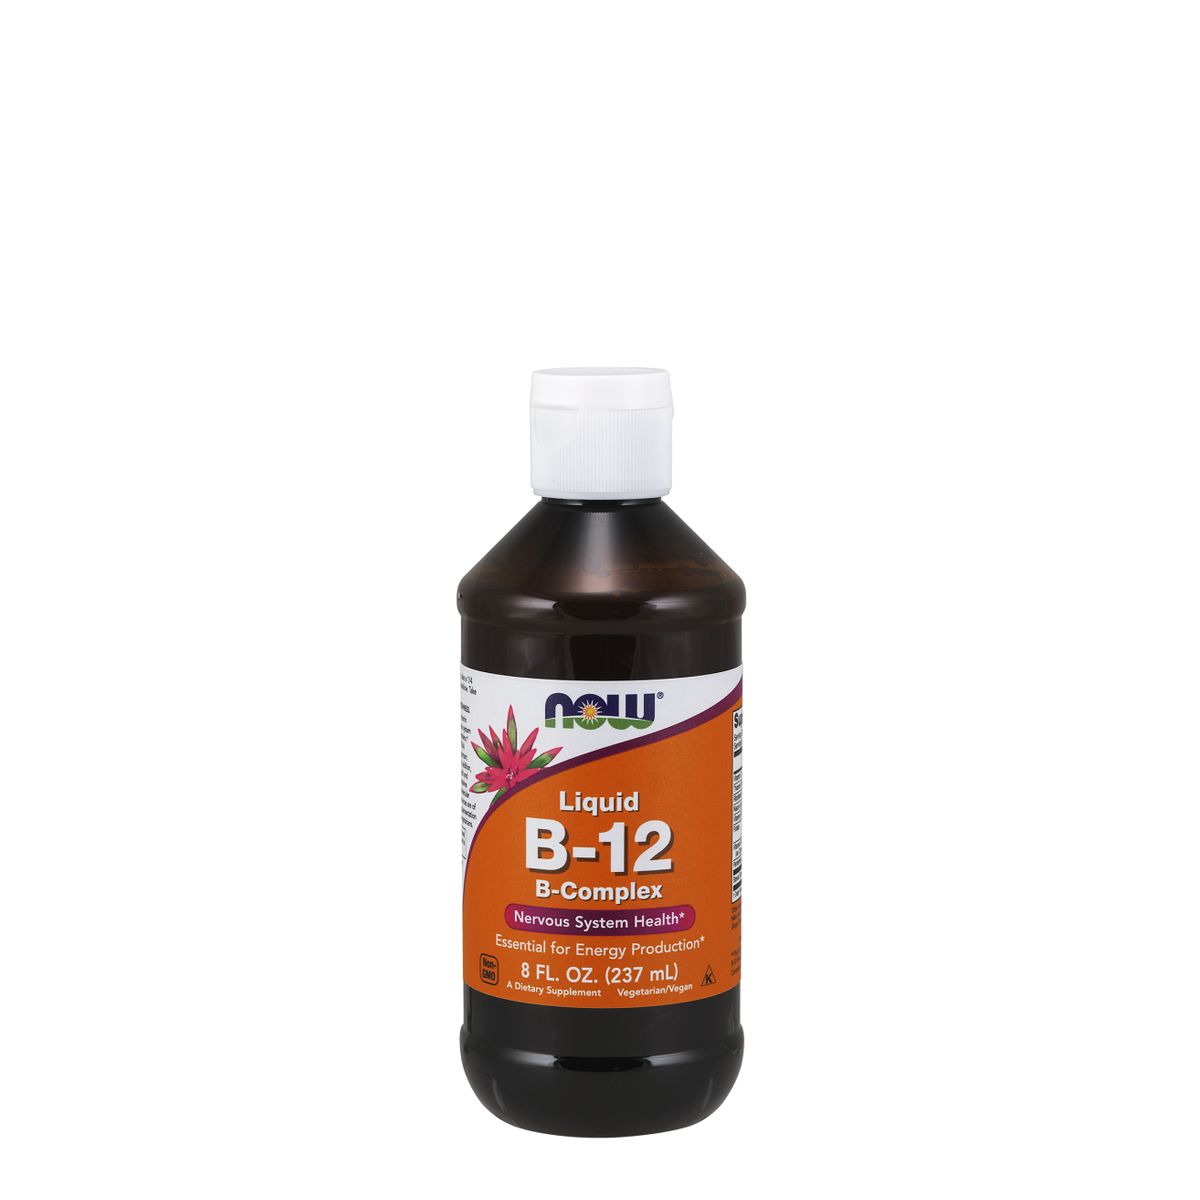 Folyékony B-12 vitamin komplex, Now B-12 Liquid, 237 ml